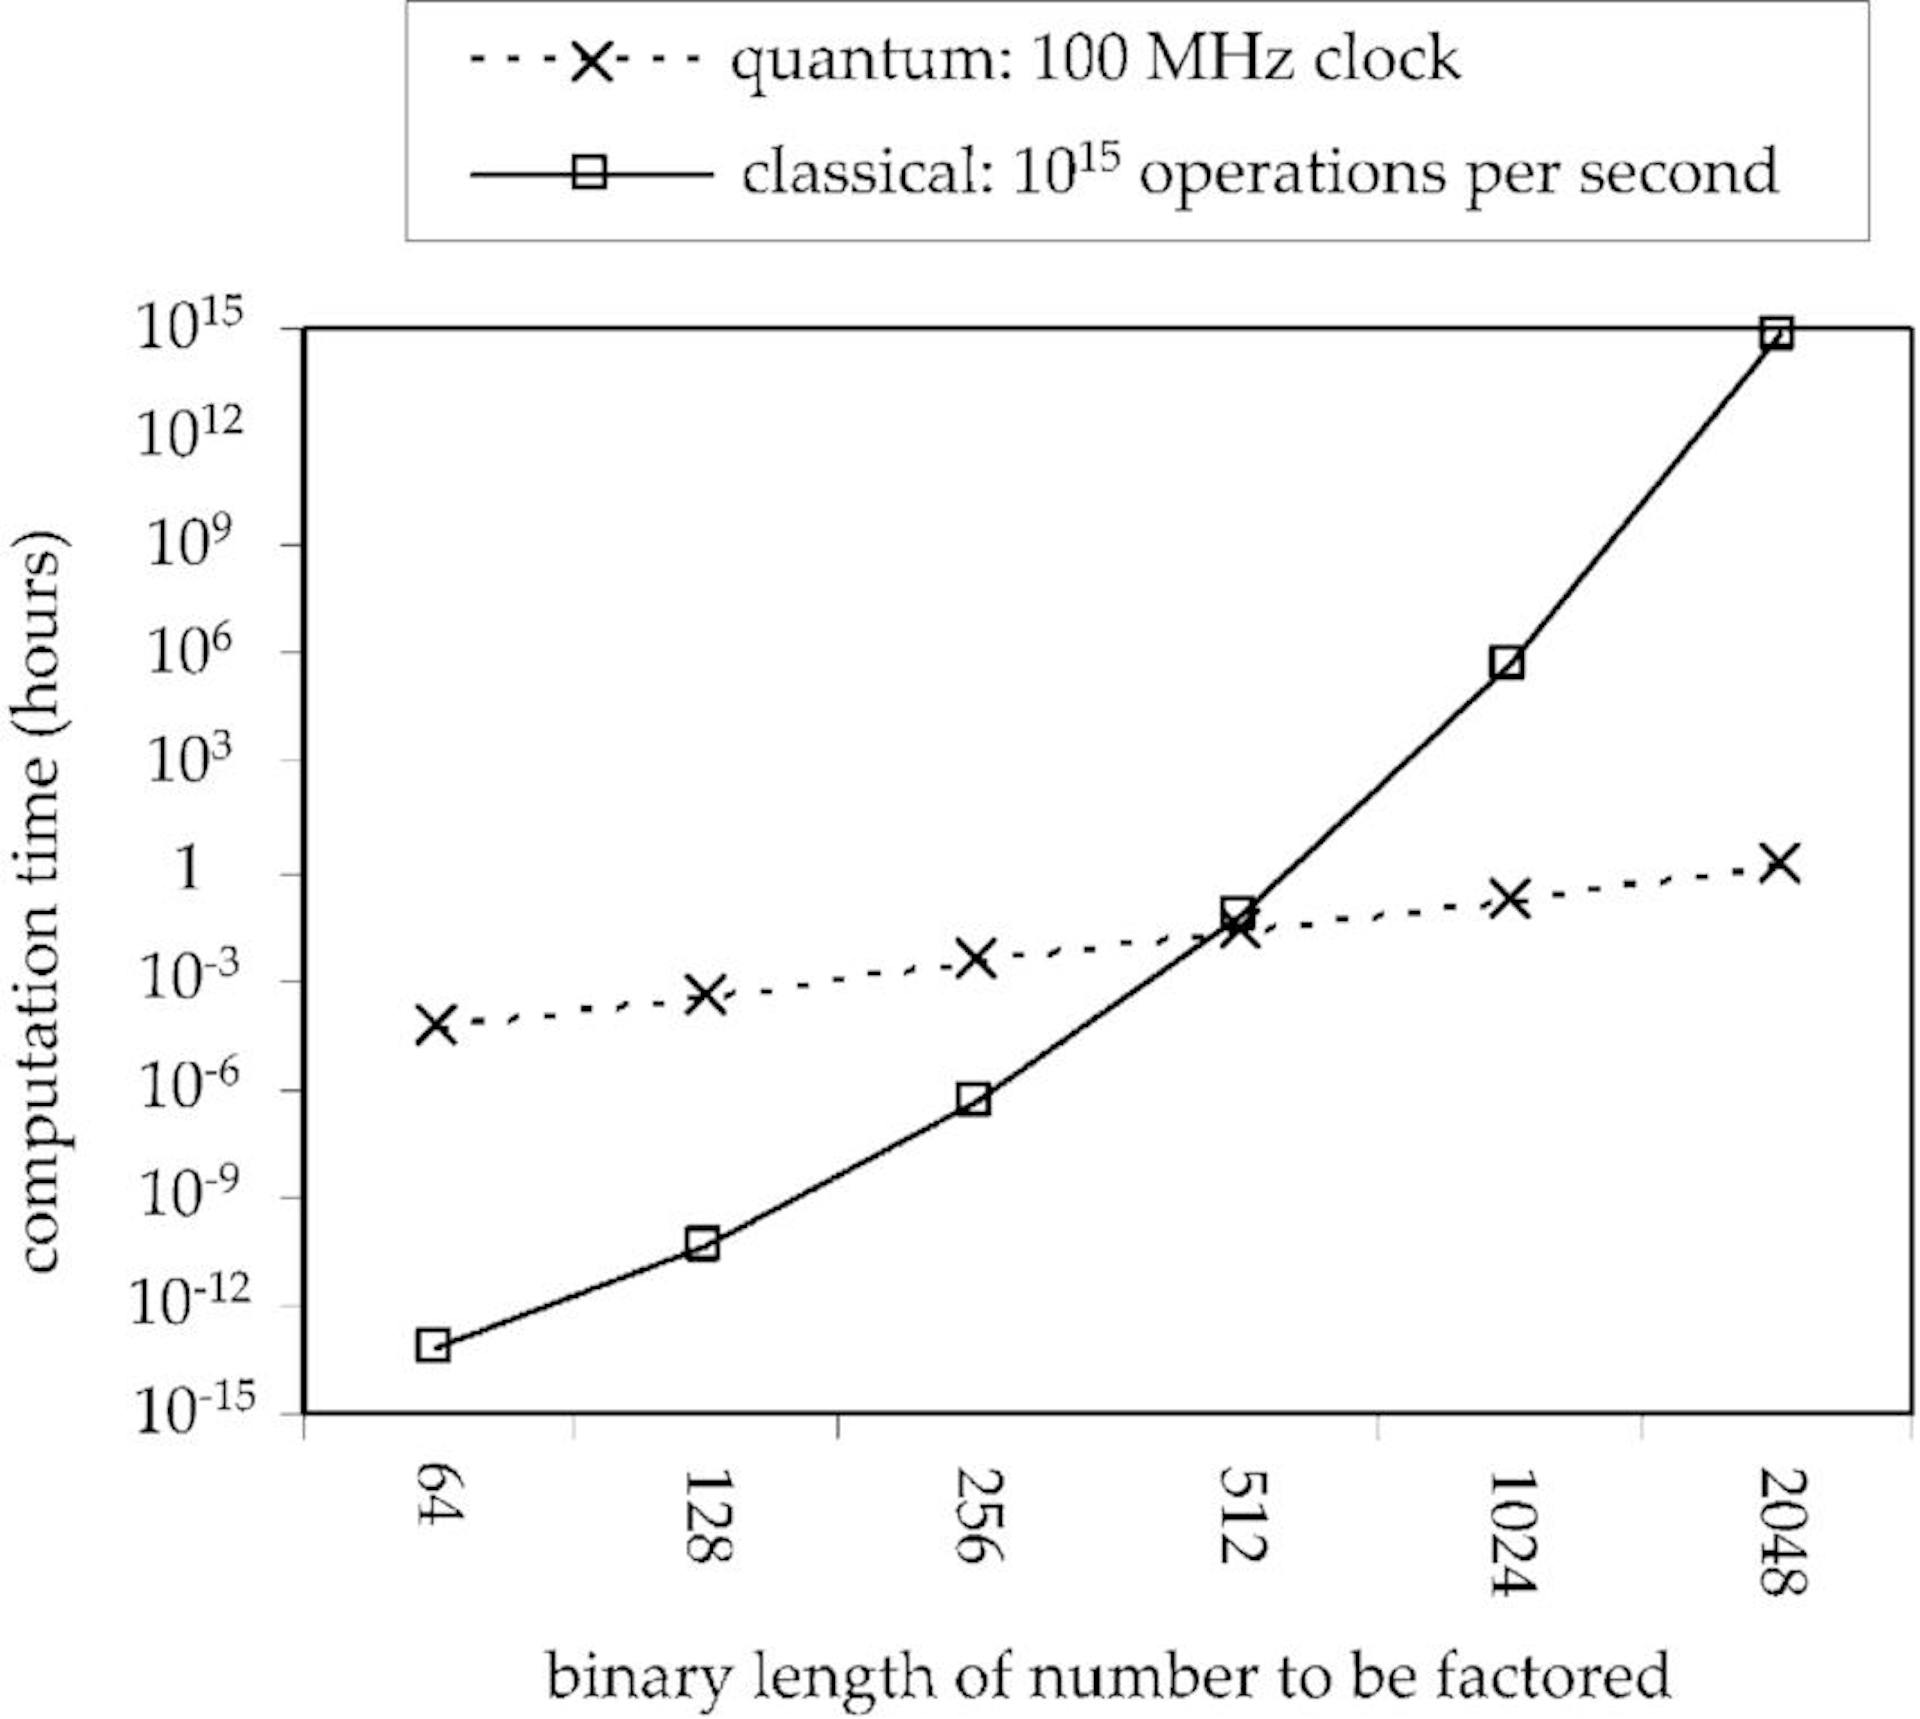 출처 - https://www.researchgate.net/Figure/Comparison-of-estimated-computation-time-in-hours-for-the-problem-of-factoring-numbers-of_fig1_2986358